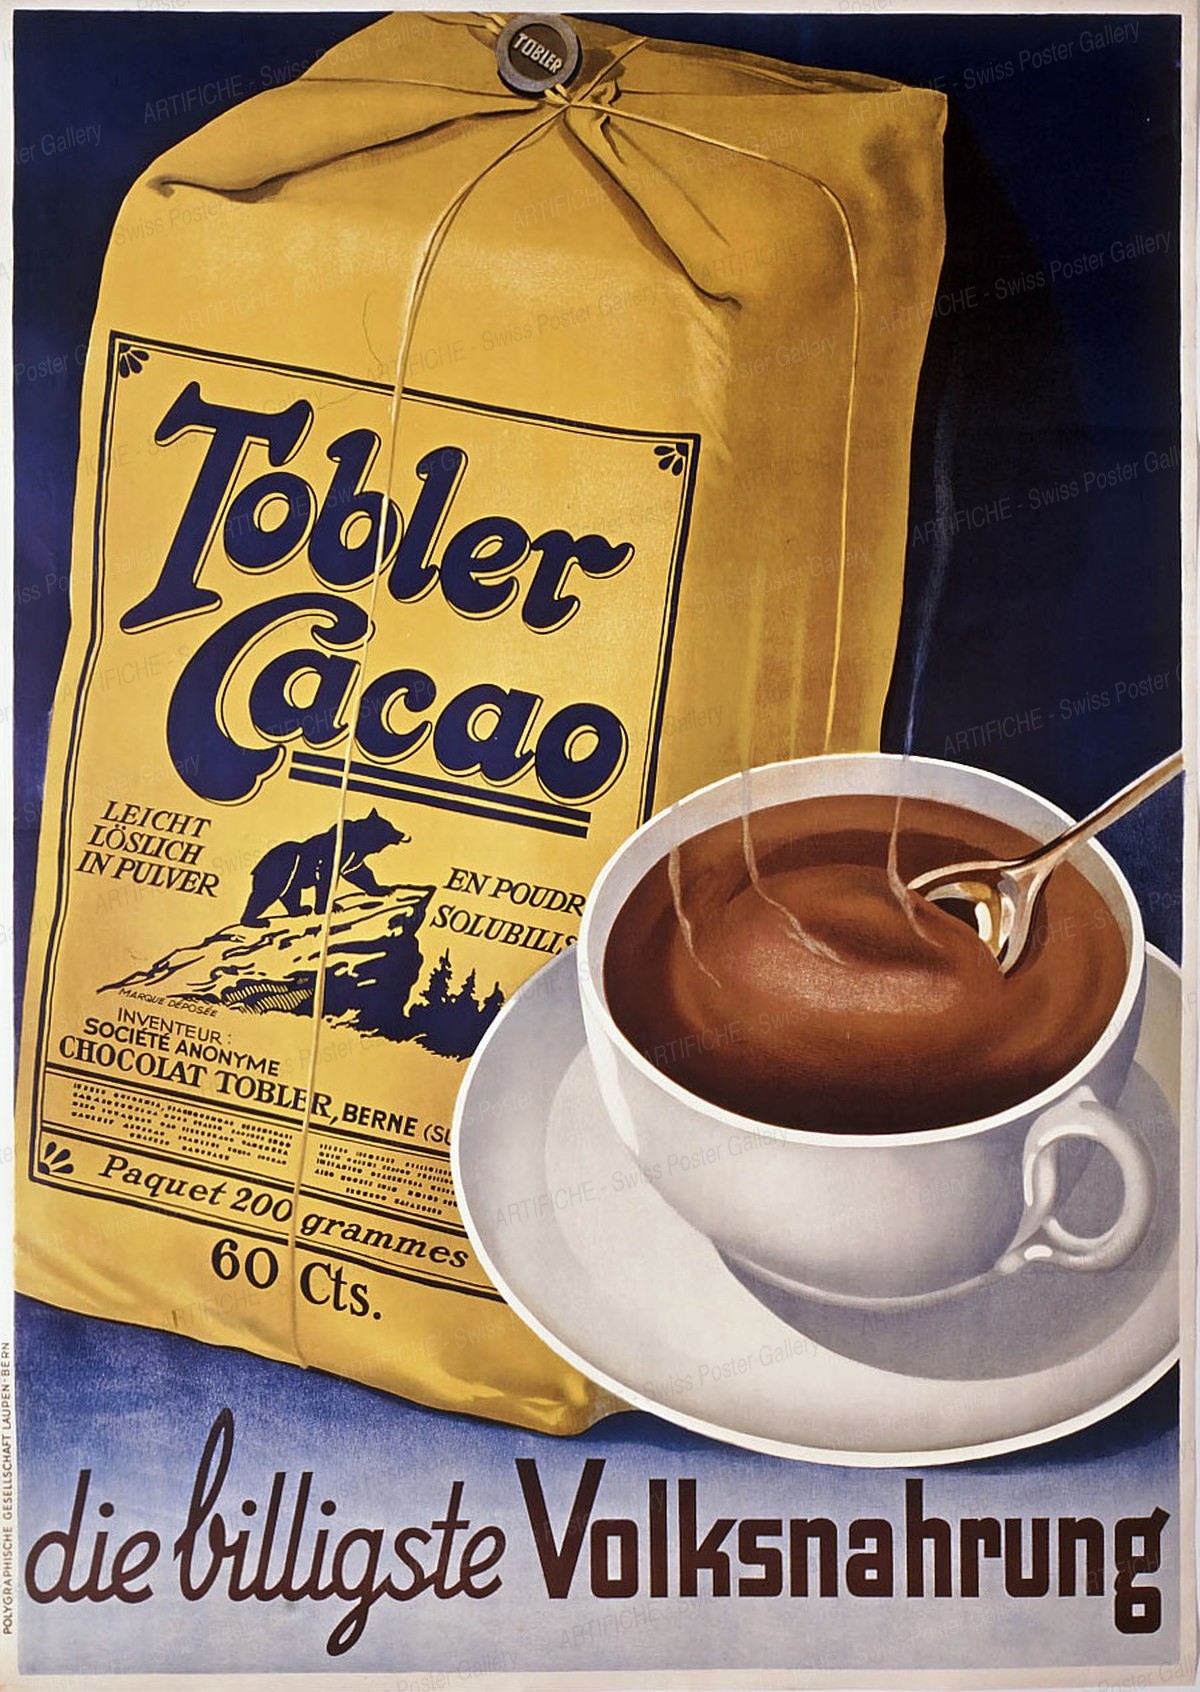 Tobler Cacao, Artist unknown